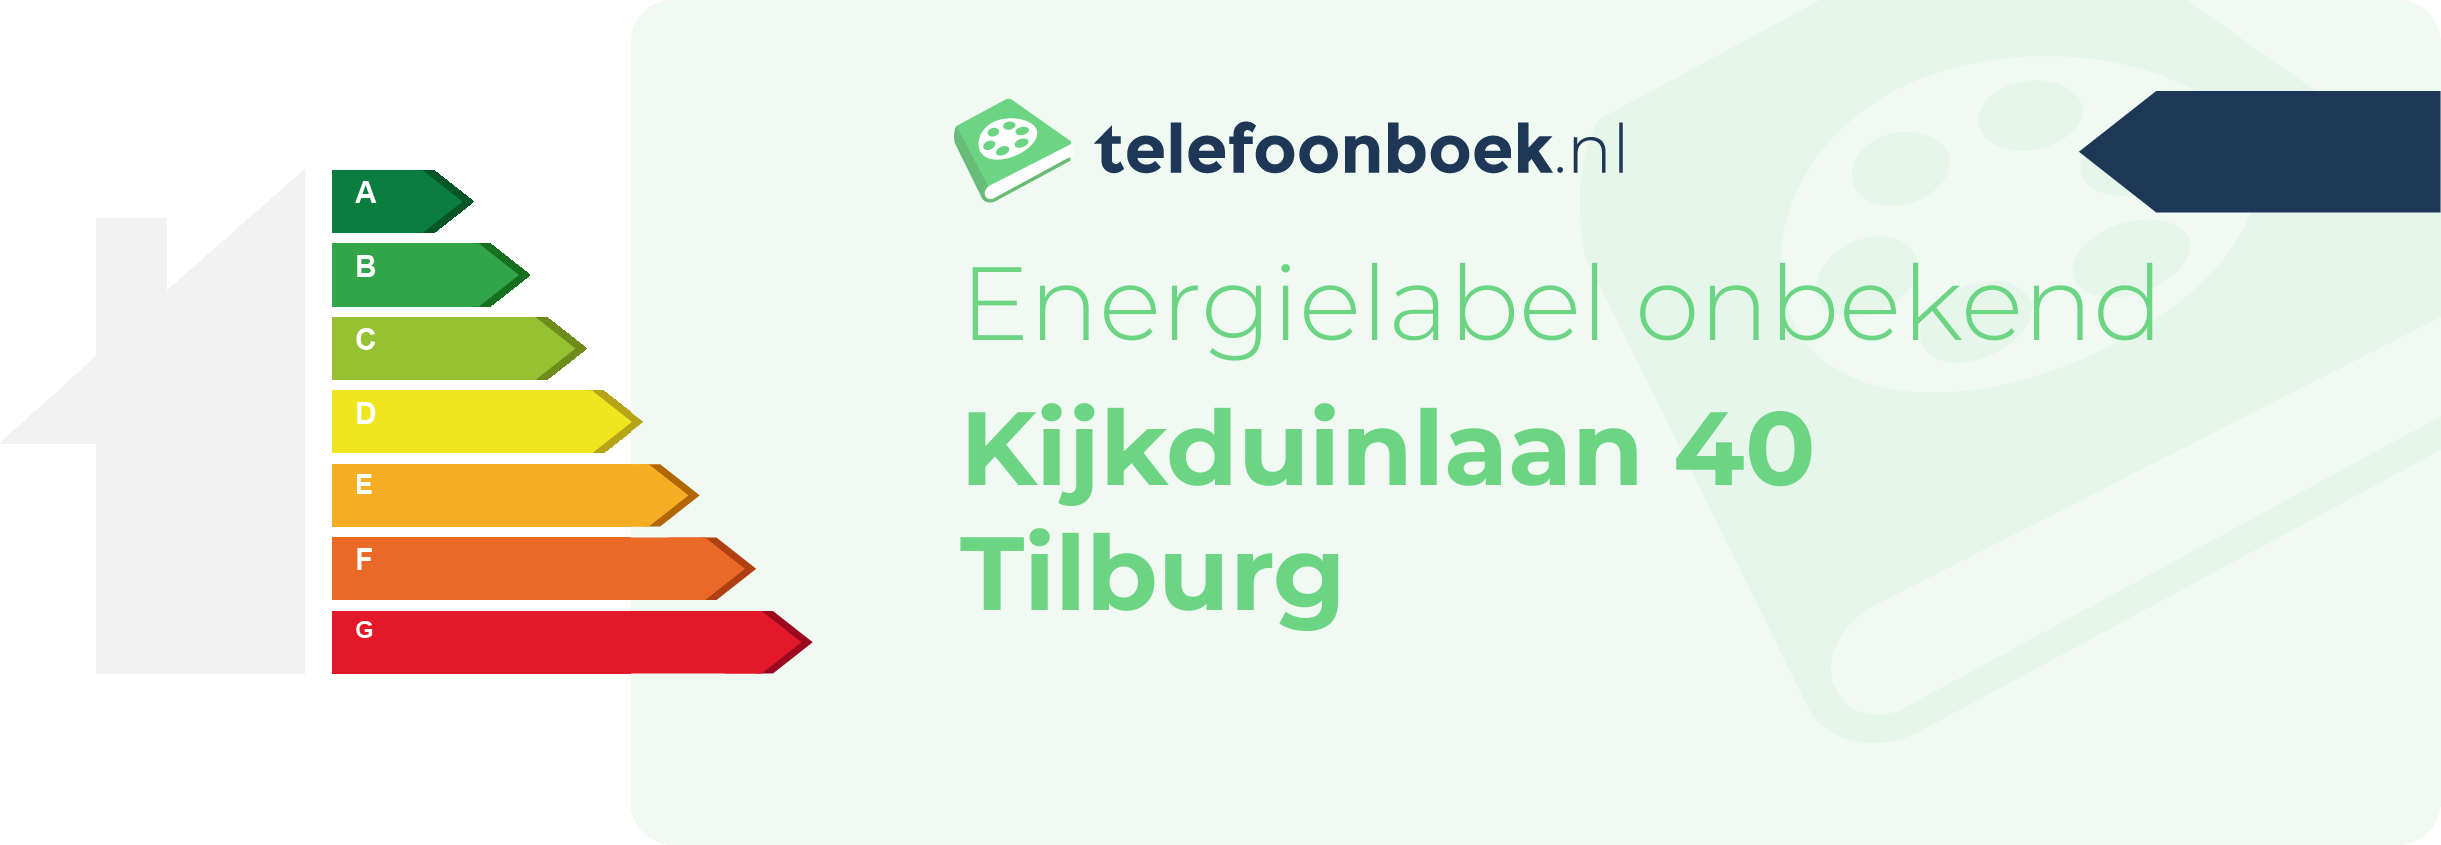 Energielabel Kijkduinlaan 40 Tilburg